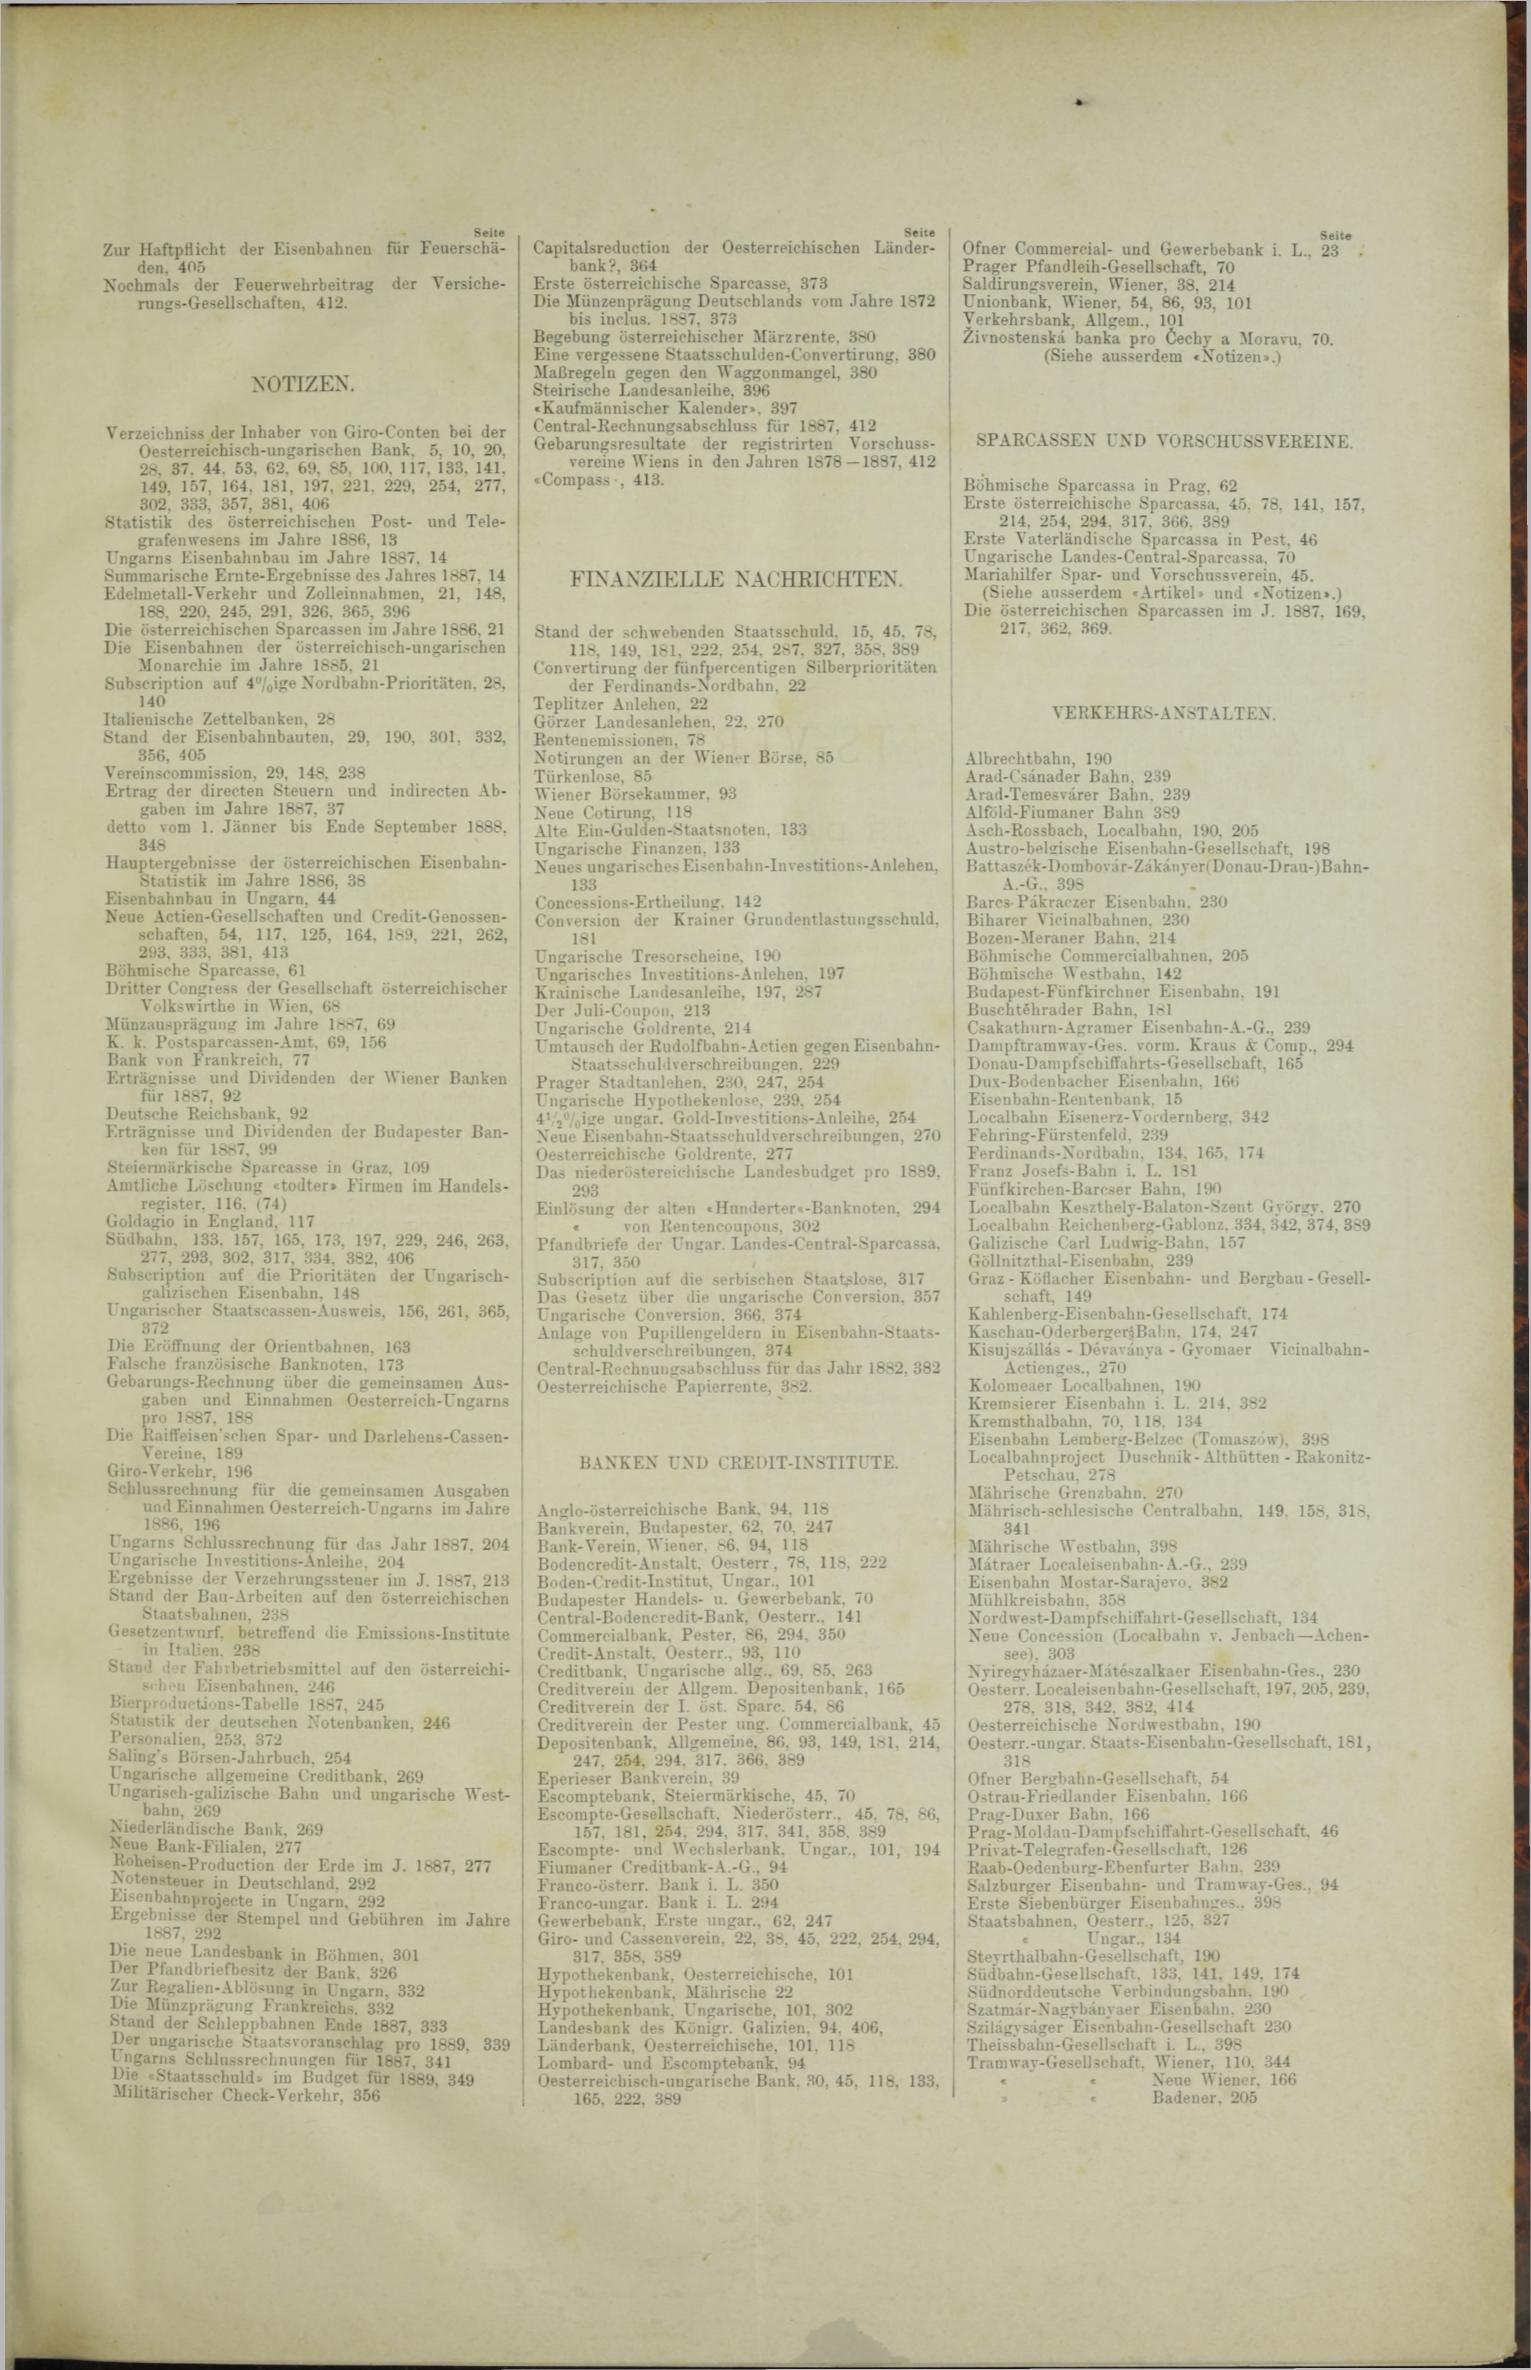 Der Tresor 16.08.1888 - Seite 11